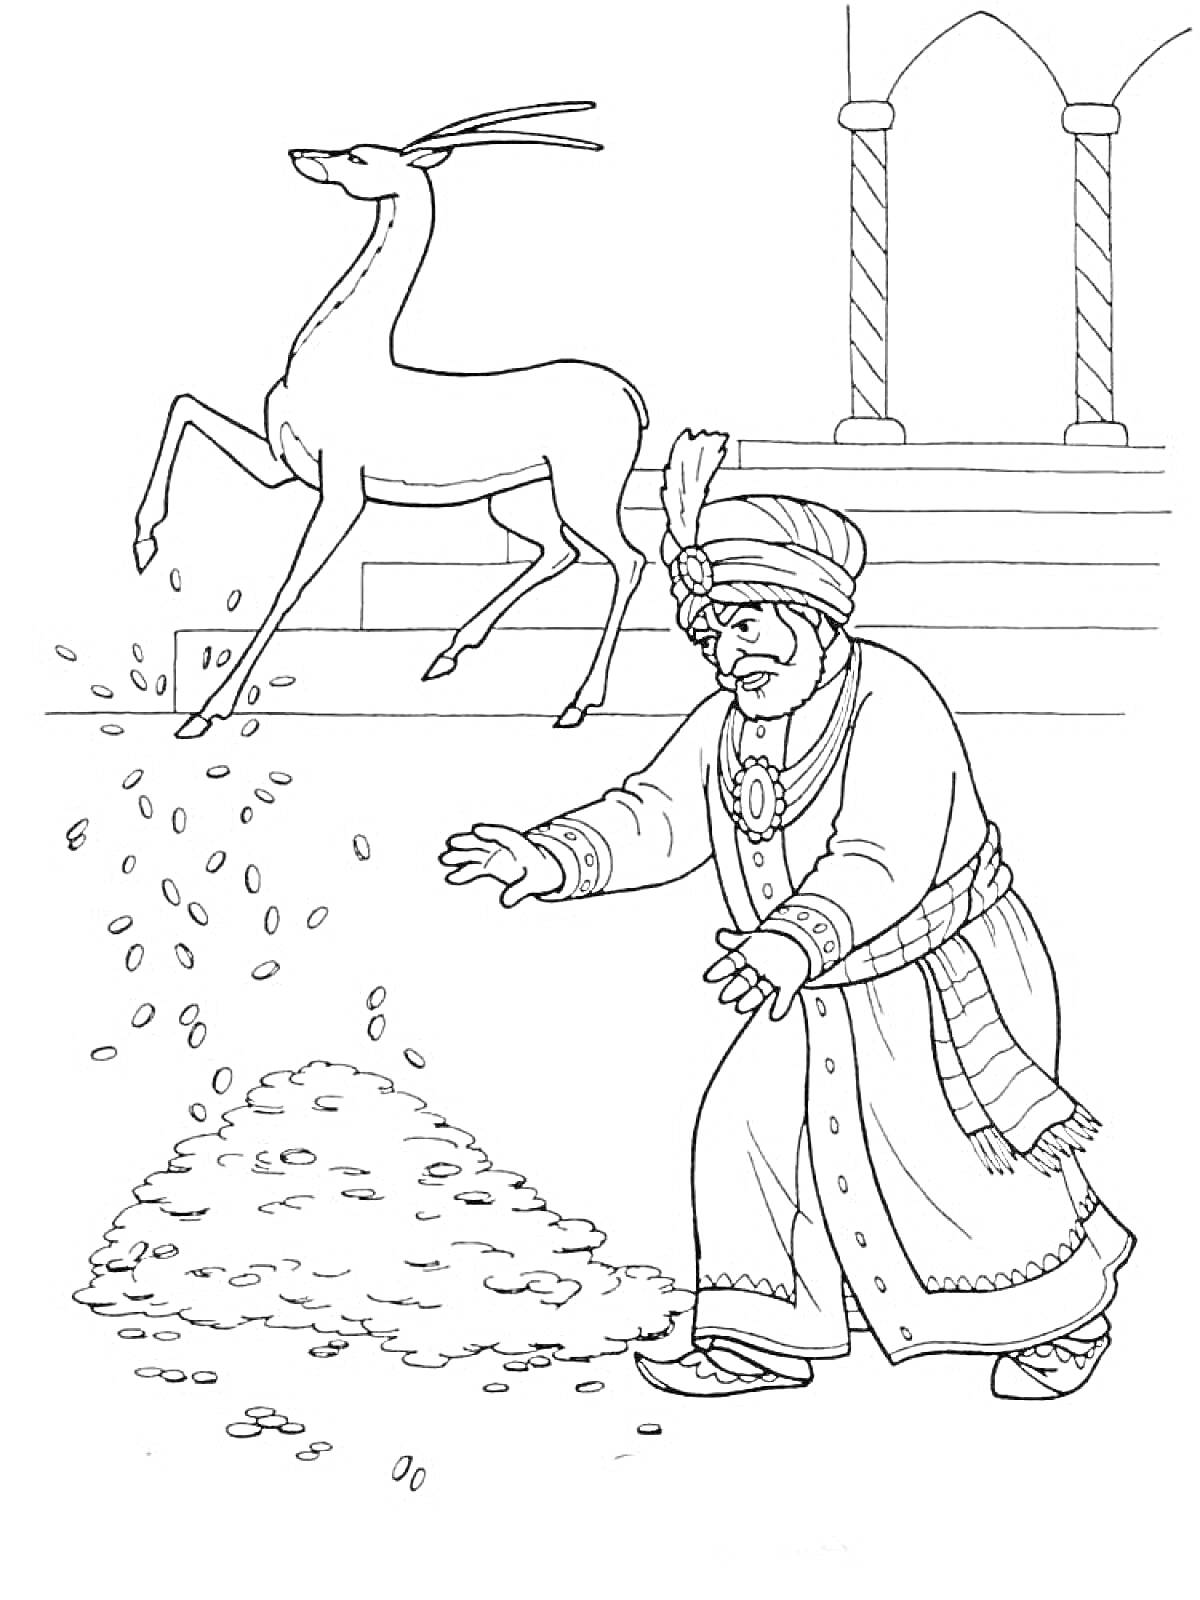 Раскраска олень с серебряным копытцем, человек в восточной одежде, монеты, ступени, арки